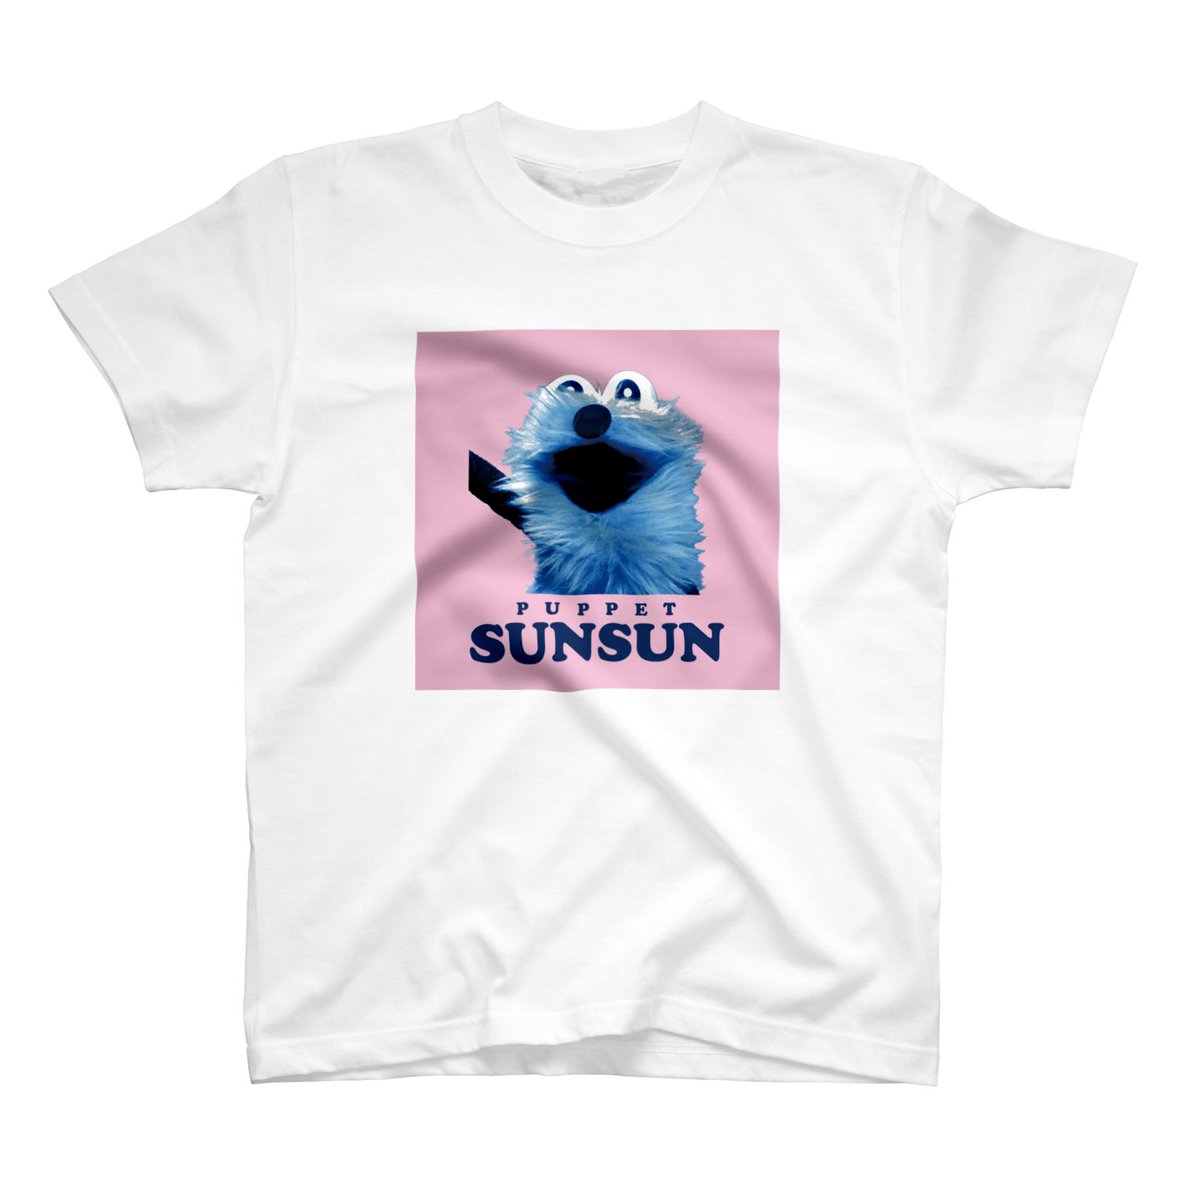 「SUZURIさんのTシャツセール、さいごの日になりましたっ!
みなさんいっぱいあ」|パペットスンスンのイラスト